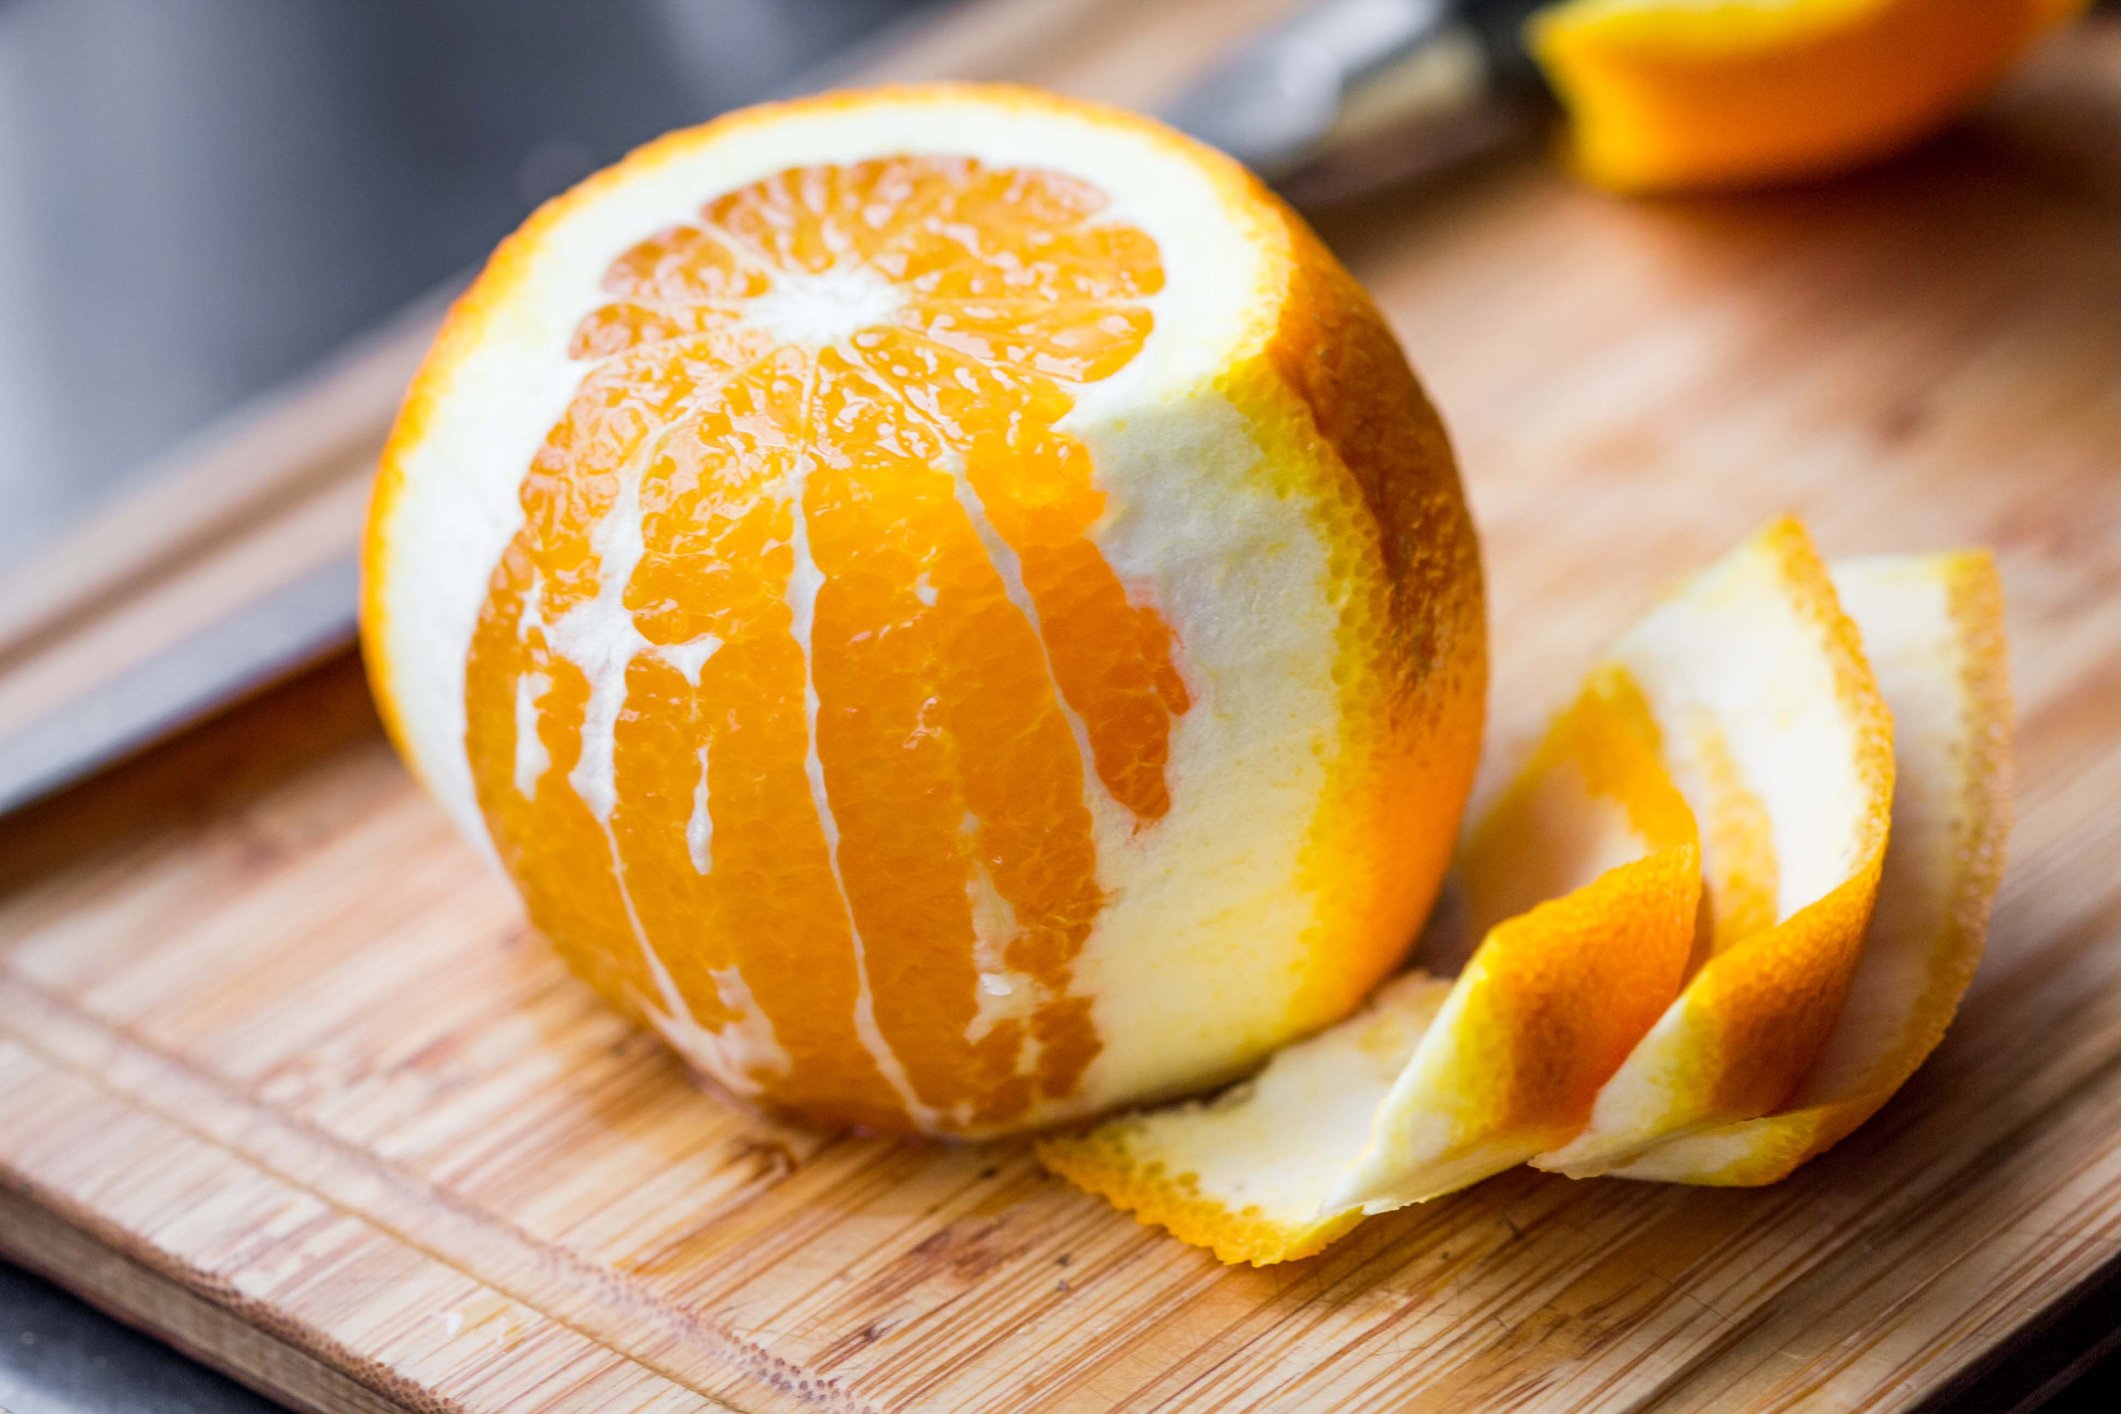 So what makes a citrus a citrus?